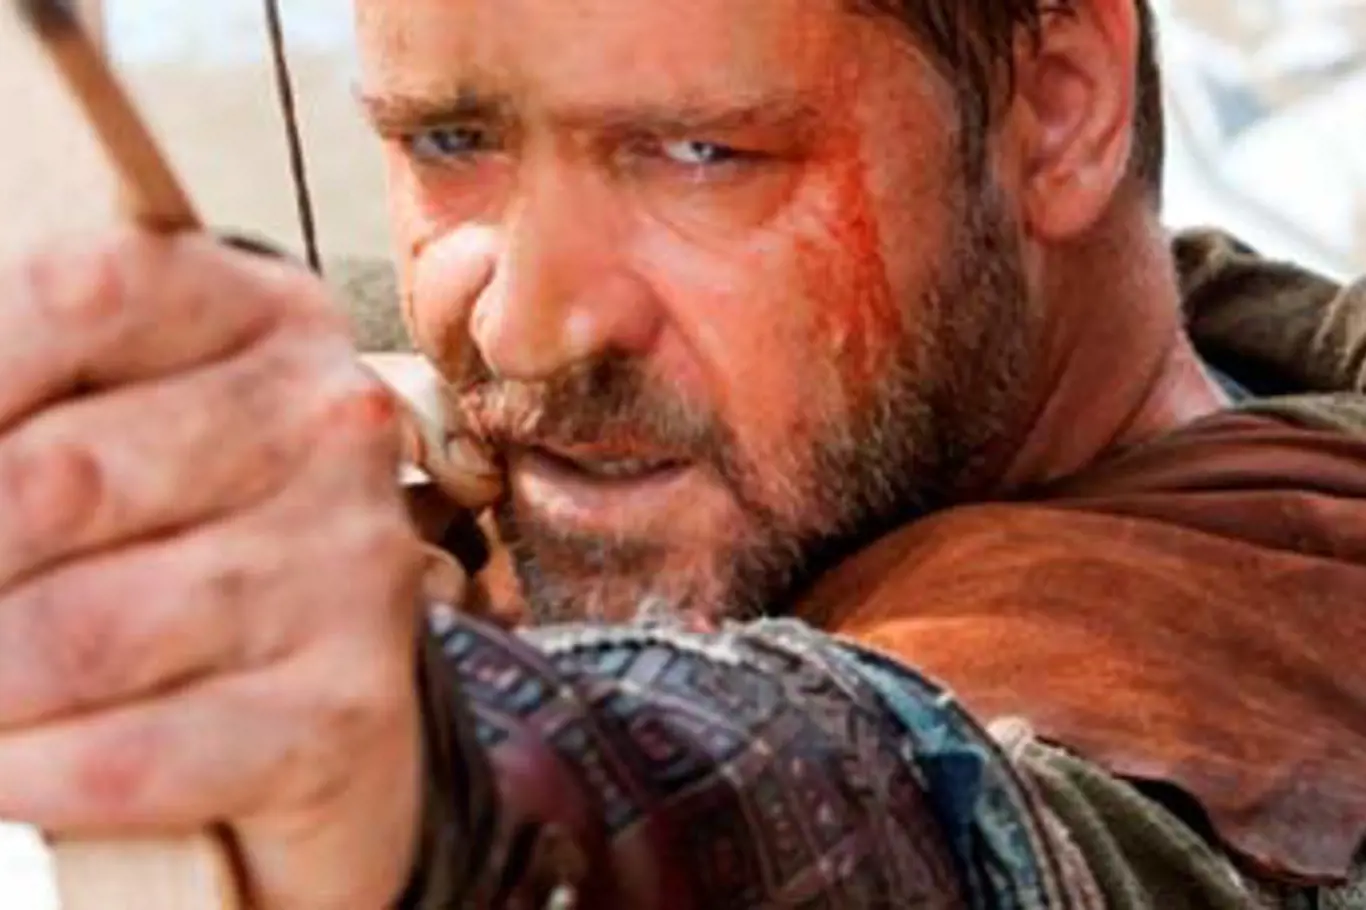 V nejnovější filmové verzi příběhu Robina Hooda si zahrál Russell Crowe